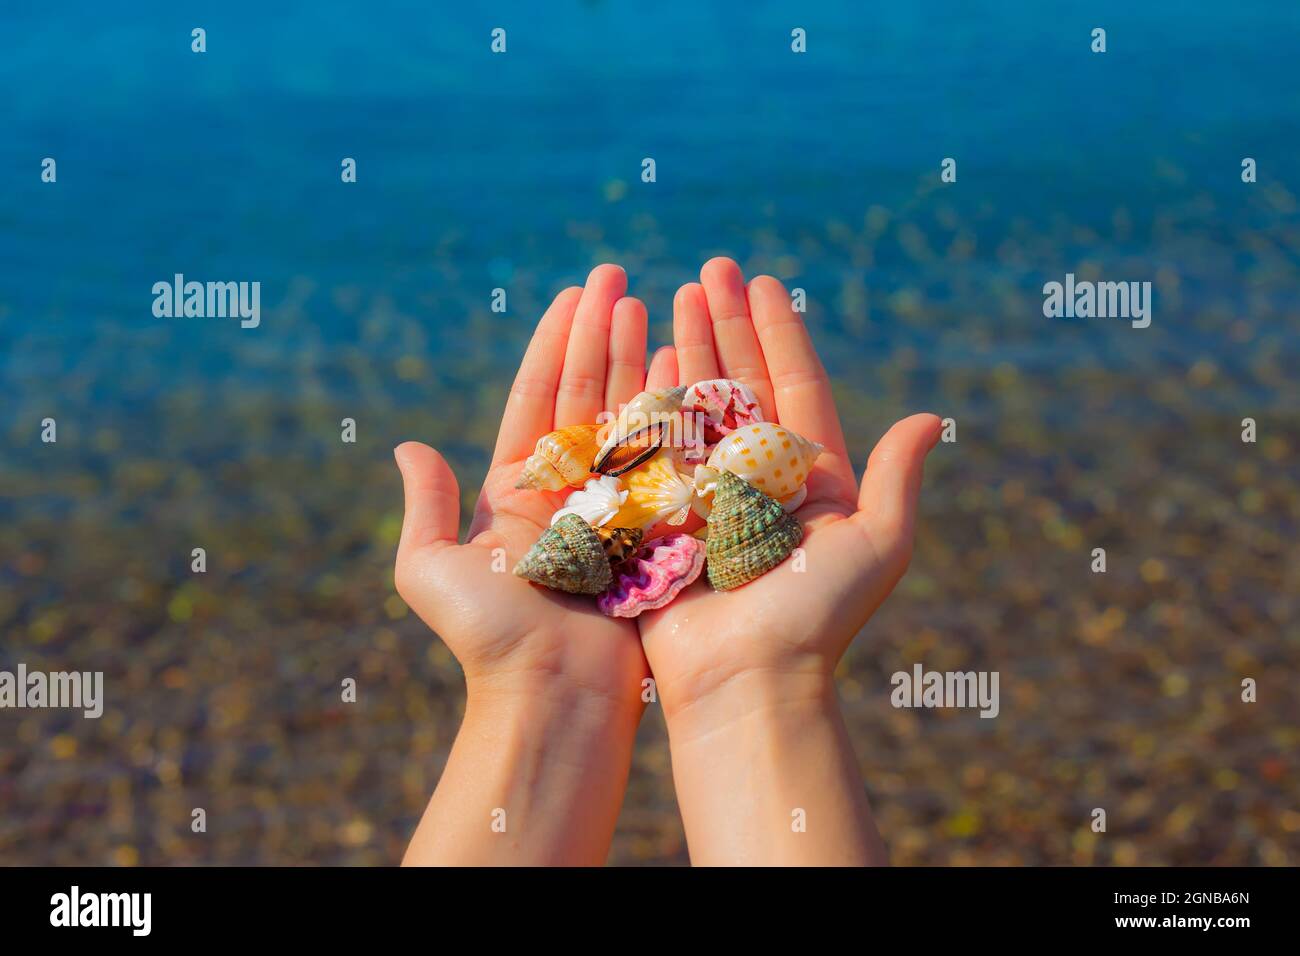 Las manos presentan conchas marinas en la vista de primera persona de la playa Foto de stock